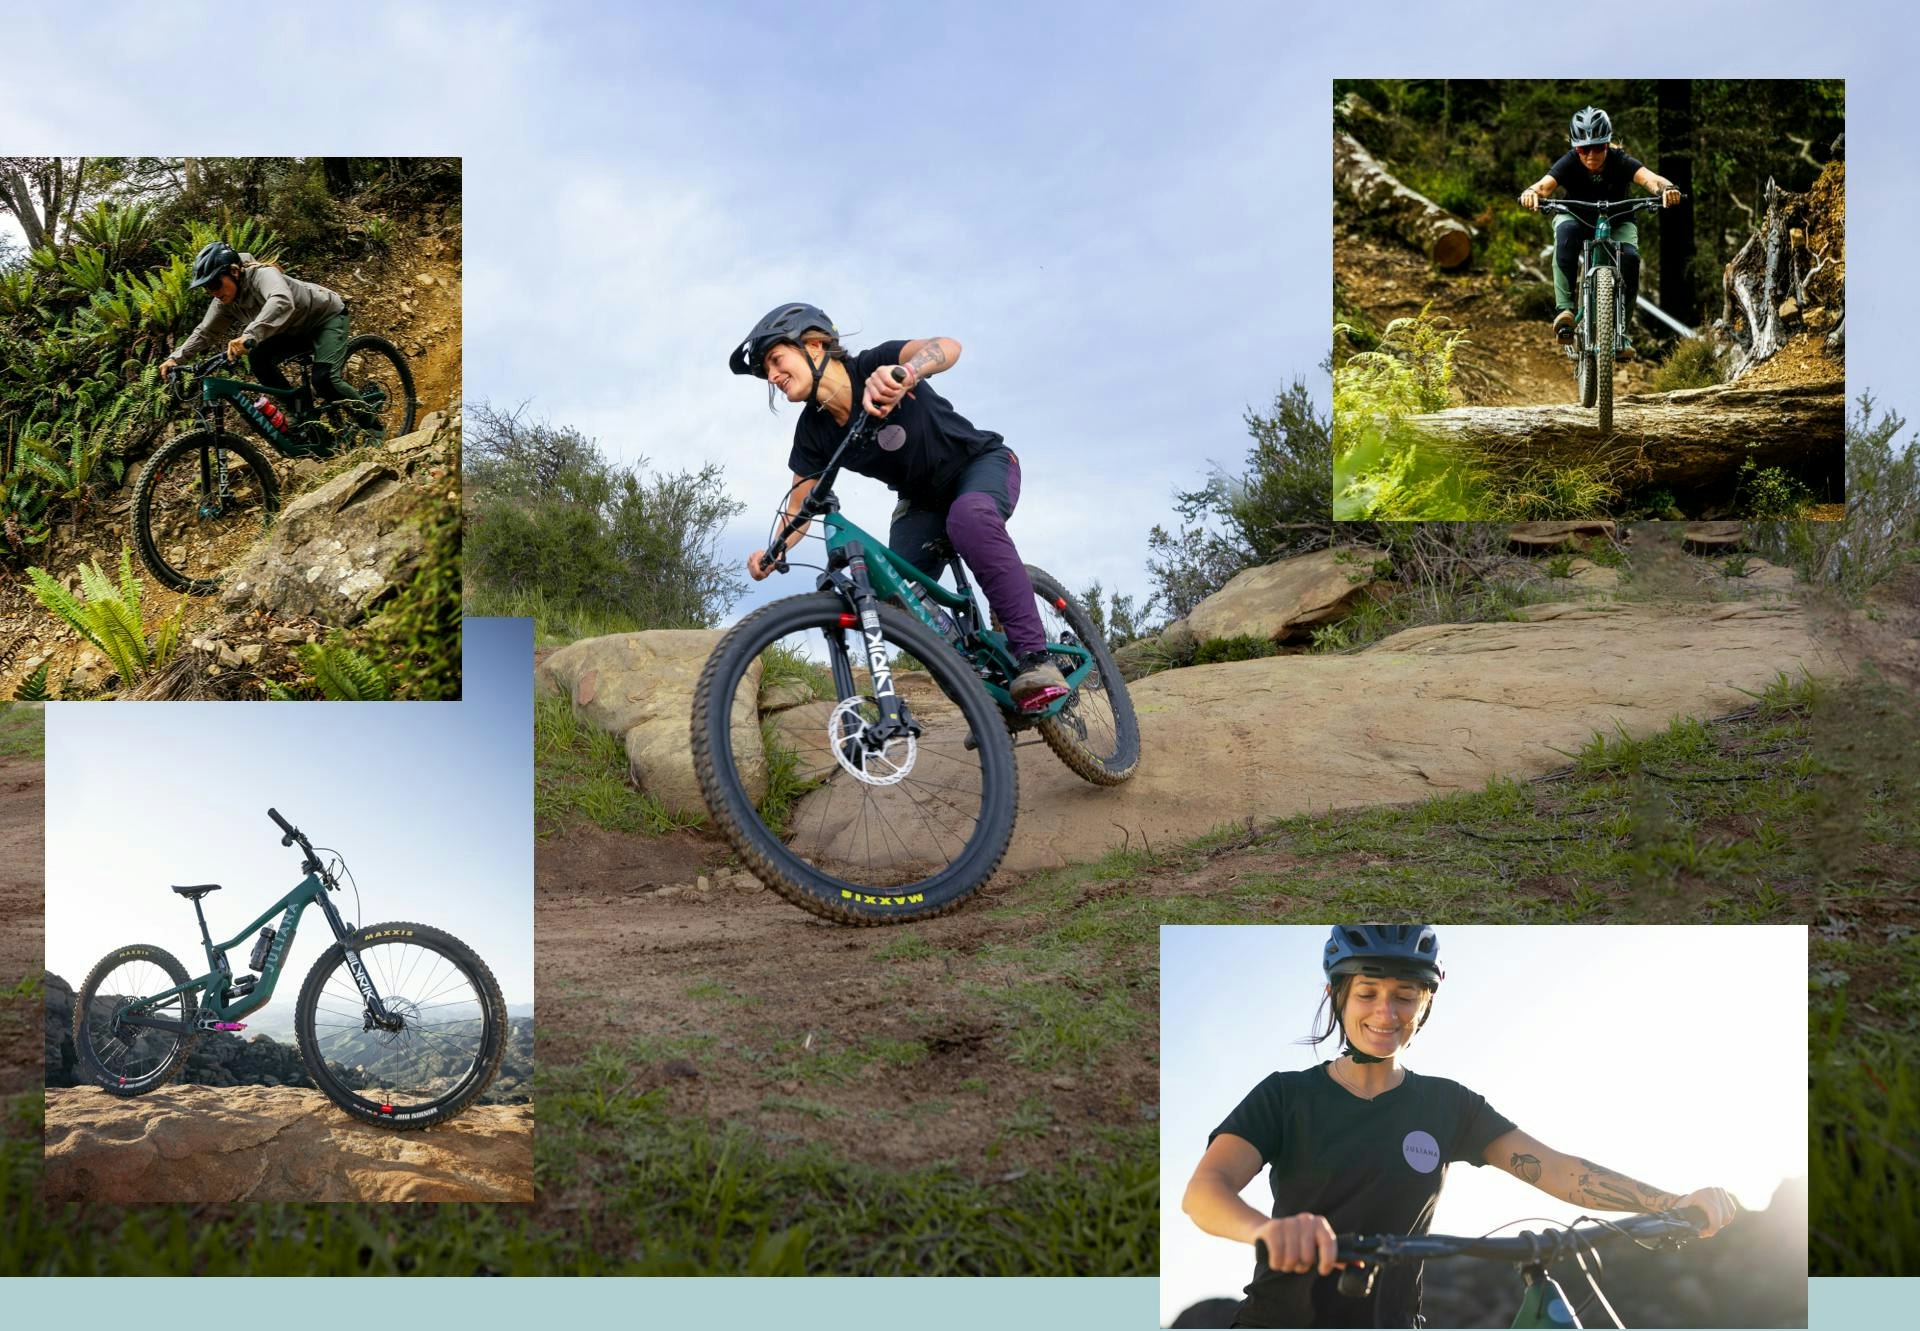 Juliana Bicycles Roubion MX full suspension women's mountain bike